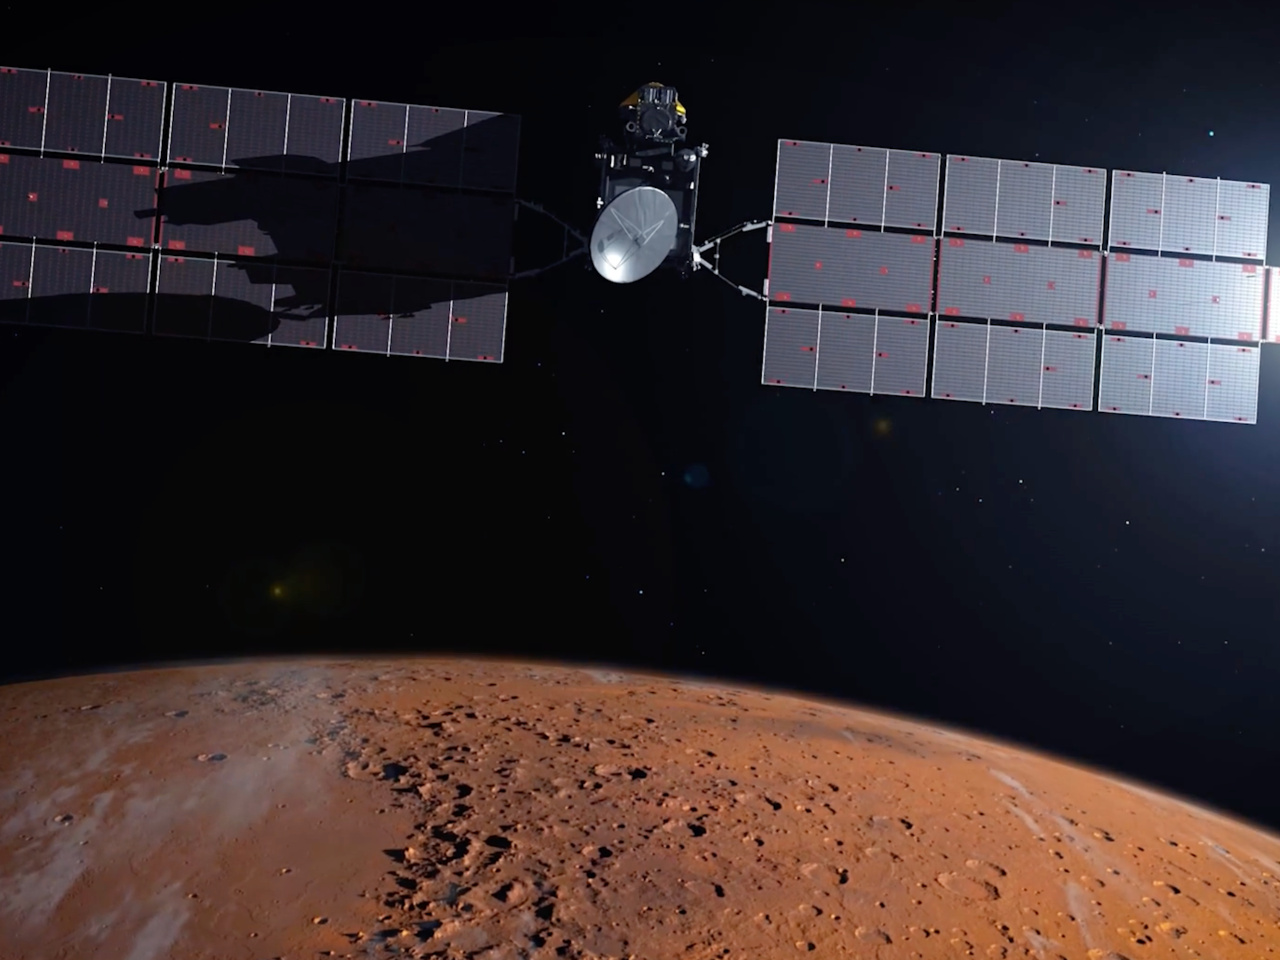 NASAの火星サンプルリターン計画、米下院で公聴会--見直しの最新状況を提供せず